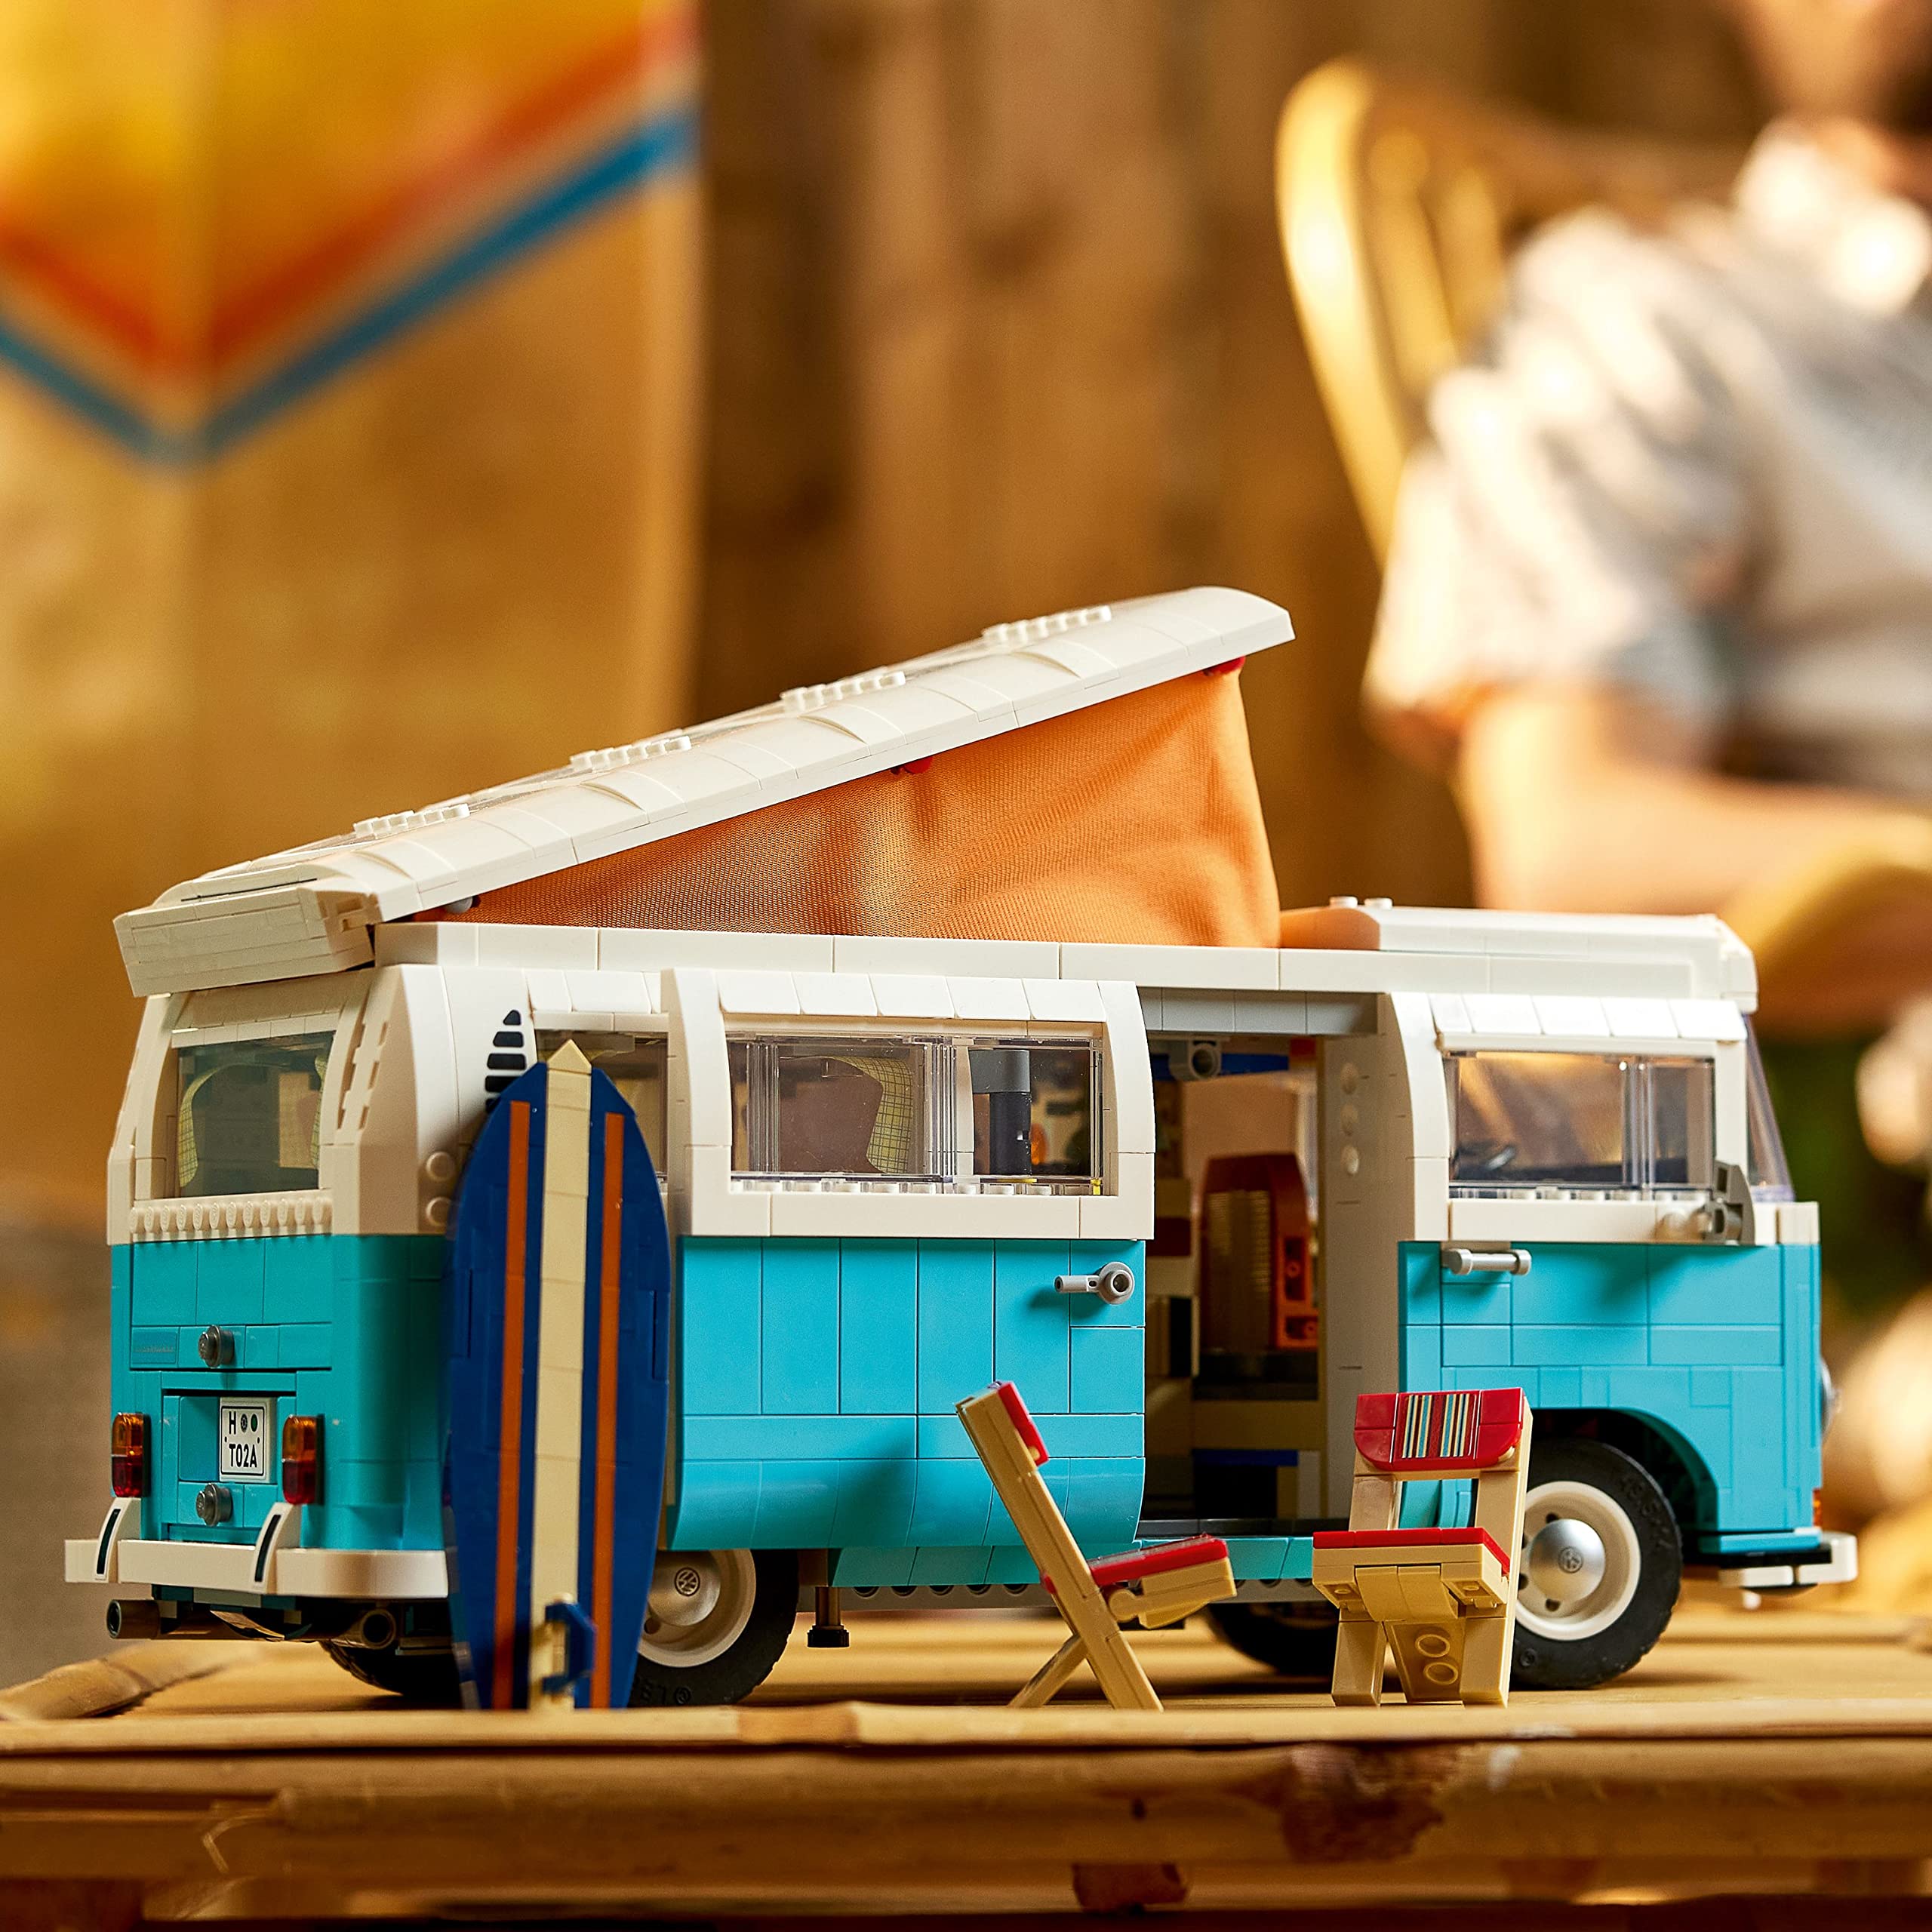 LEGO Volkswagen T2 Campingbus